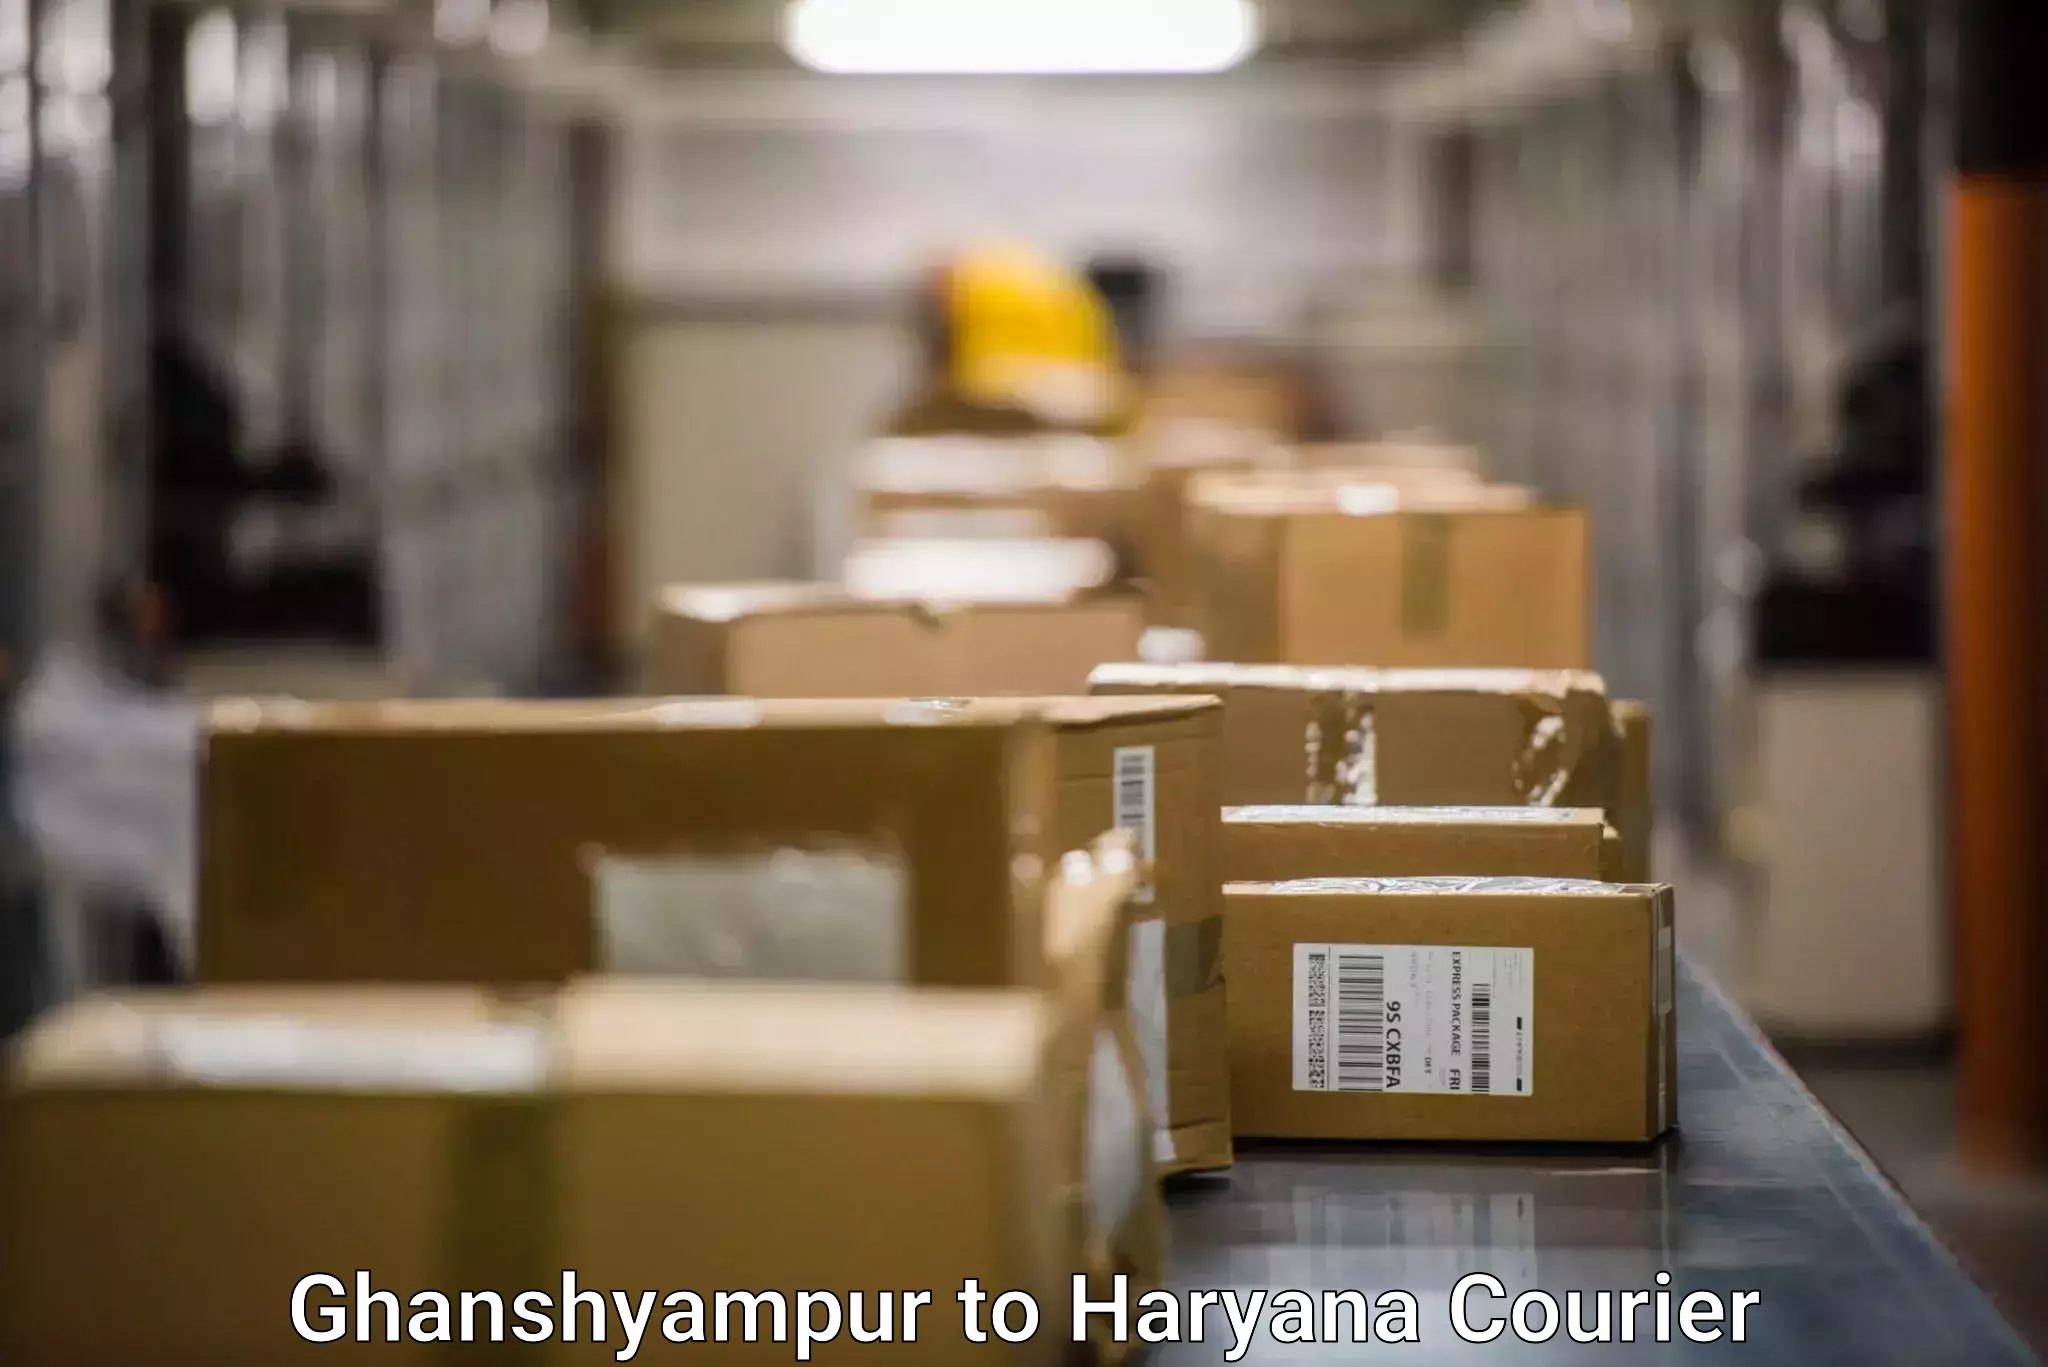 Door-to-door freight service Ghanshyampur to Abhimanyupur